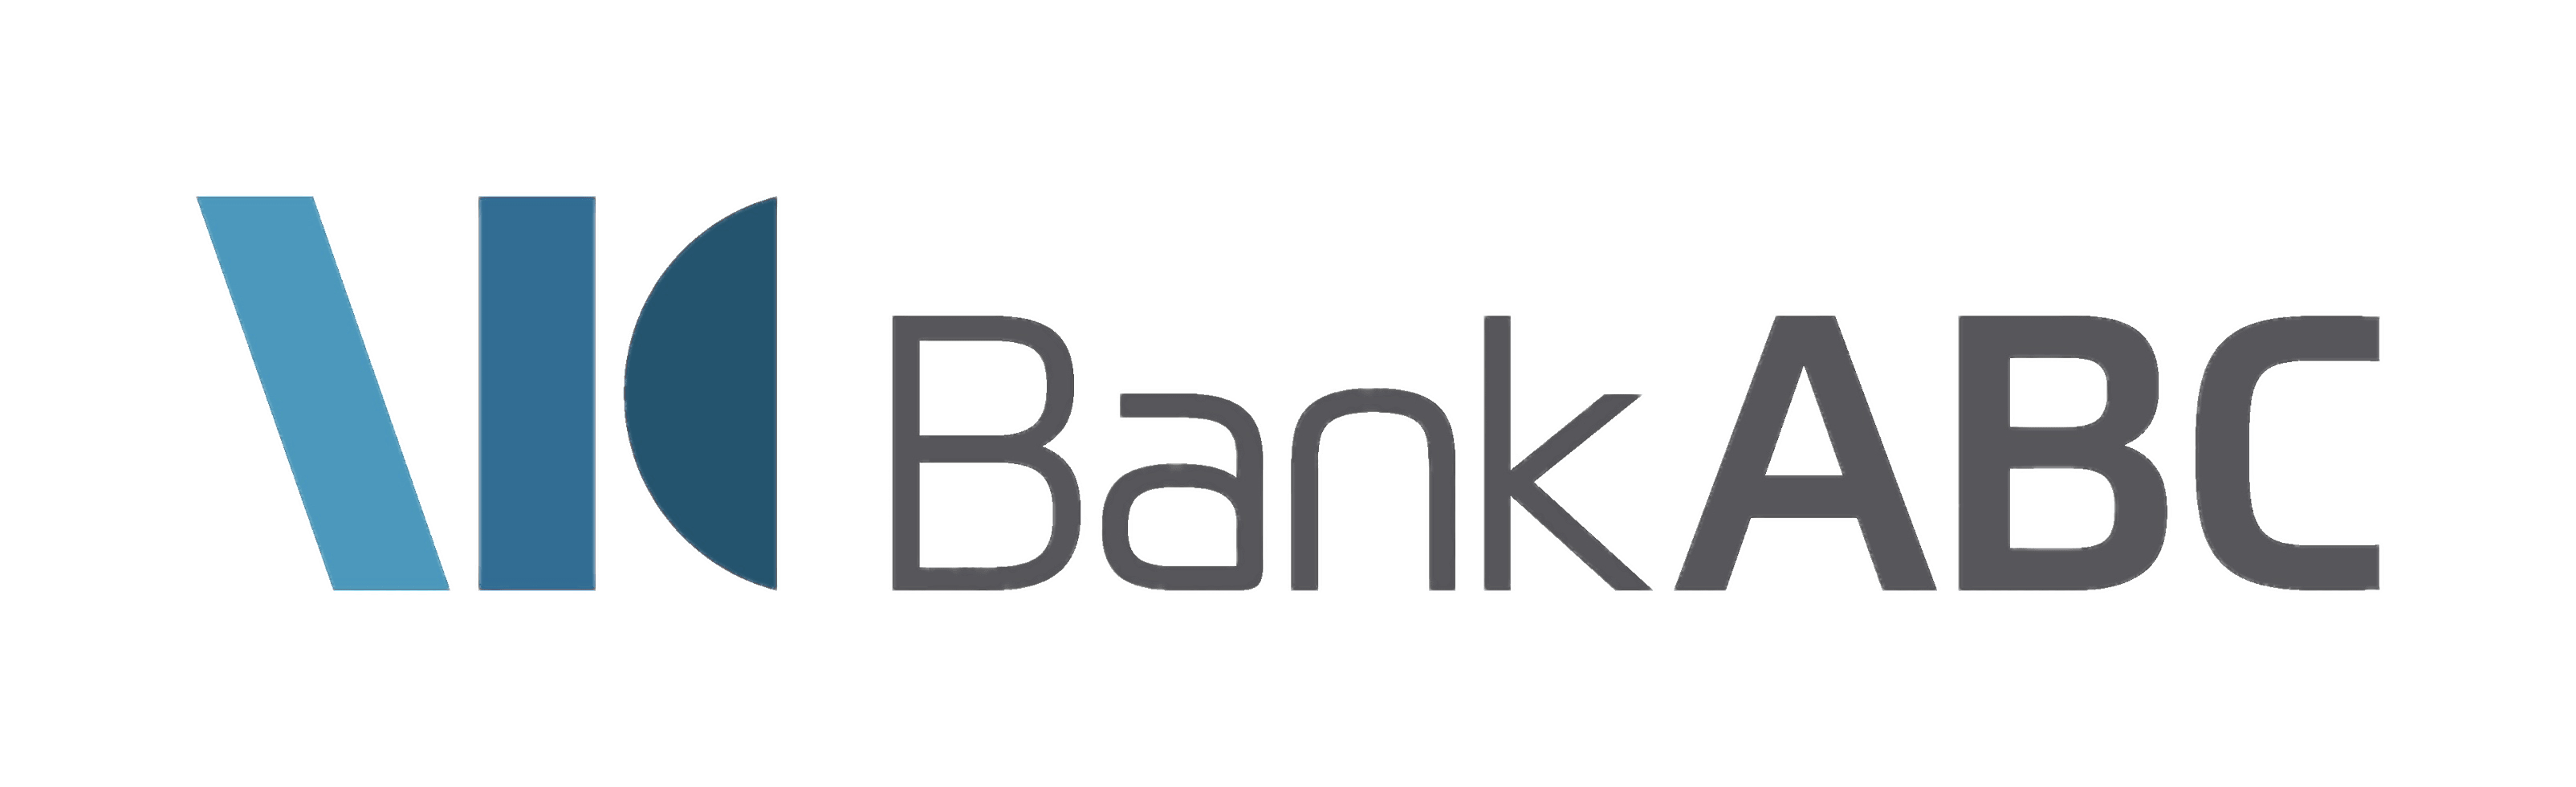 Bank Logo - Bank ABC Logo transparent PNG